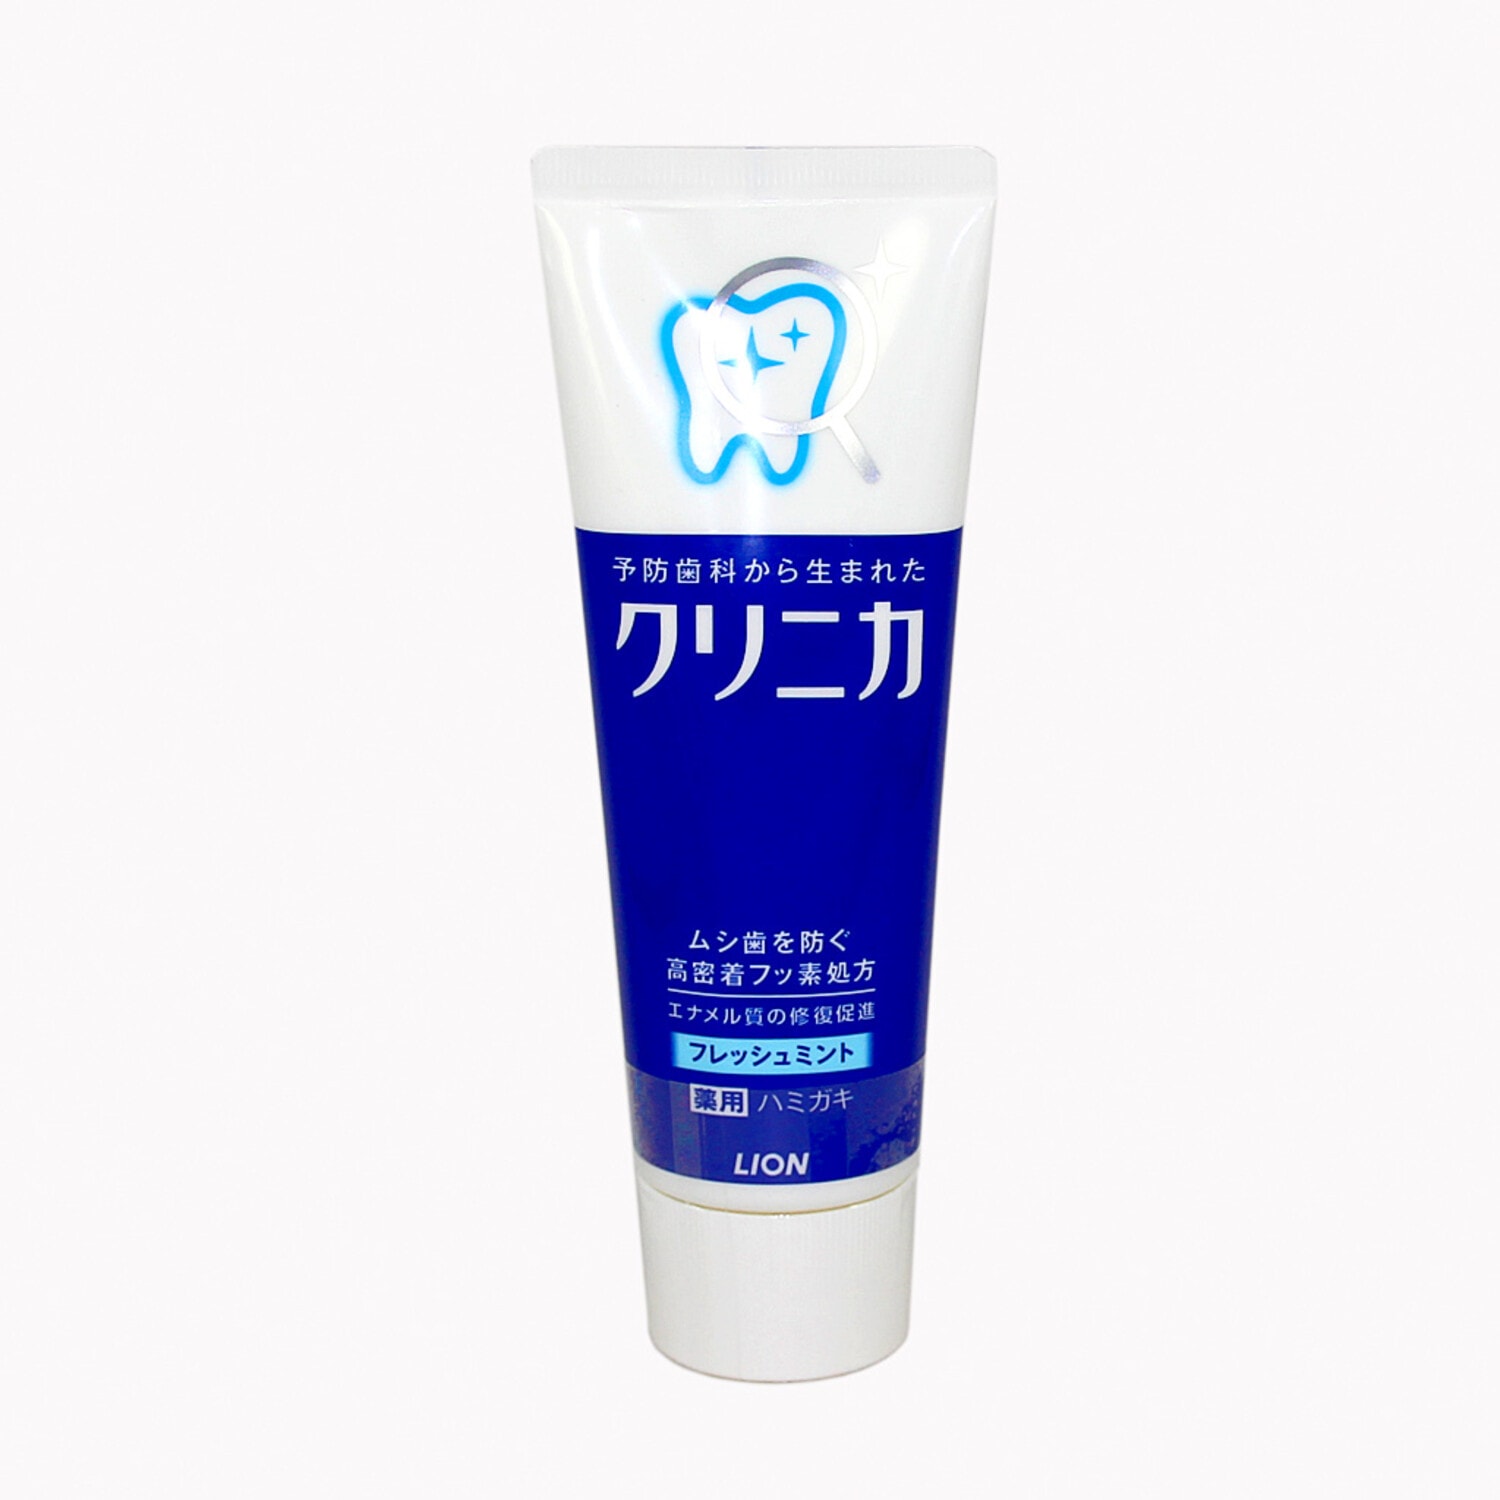 Зубная паста Lion "Clinica", для защиты от кариеса, с ароматом охлаждающей мяты, 130г. / 205647